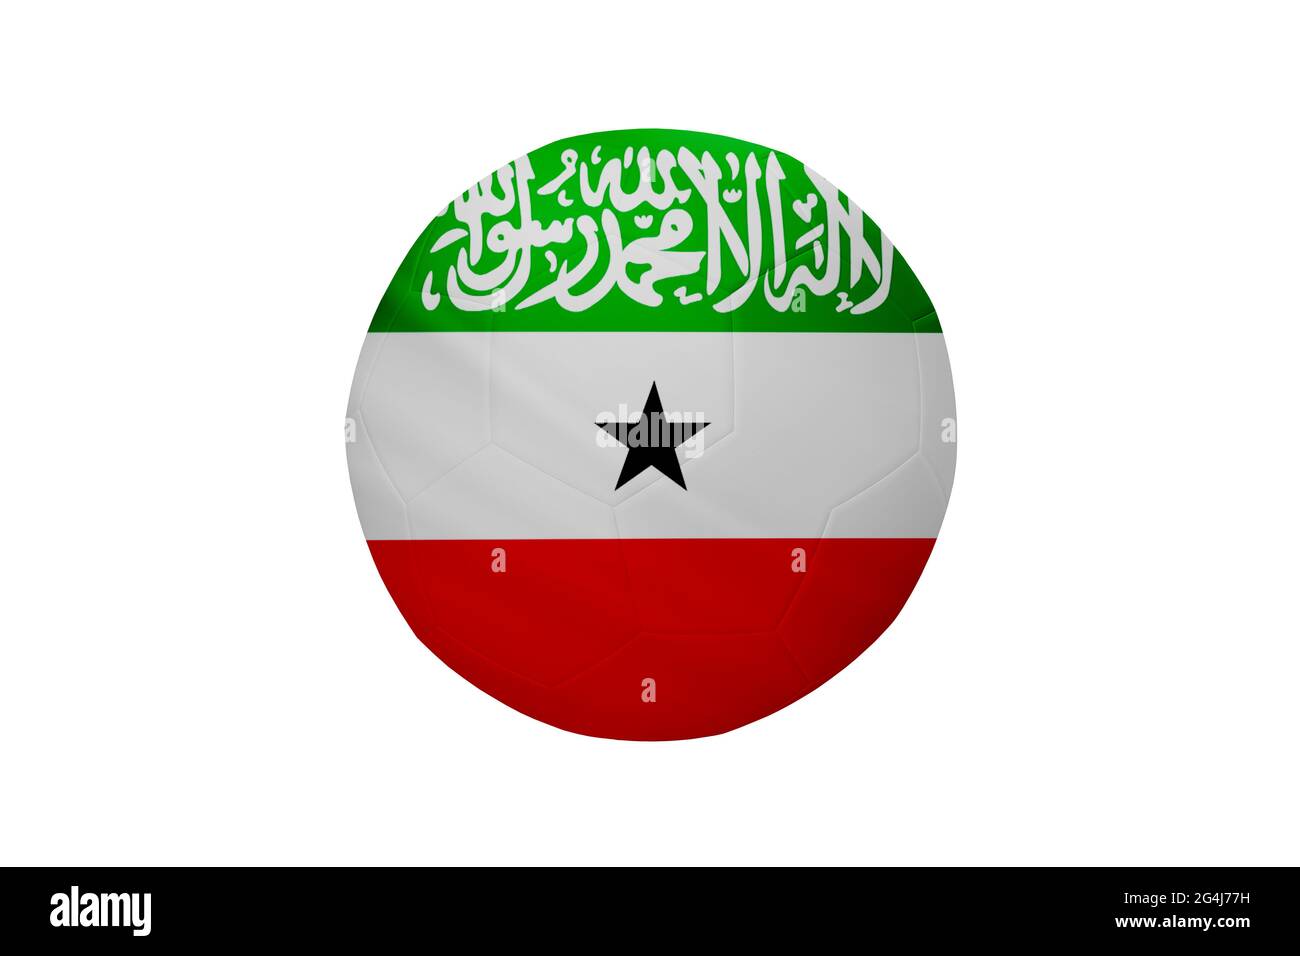 Fußball in den Farben der Somaliland-Flagge isoliert auf weißem Hintergrund. In einem konzeptionellen Meisterschaftsbild, das Somaliland unterstützt. Stockfoto